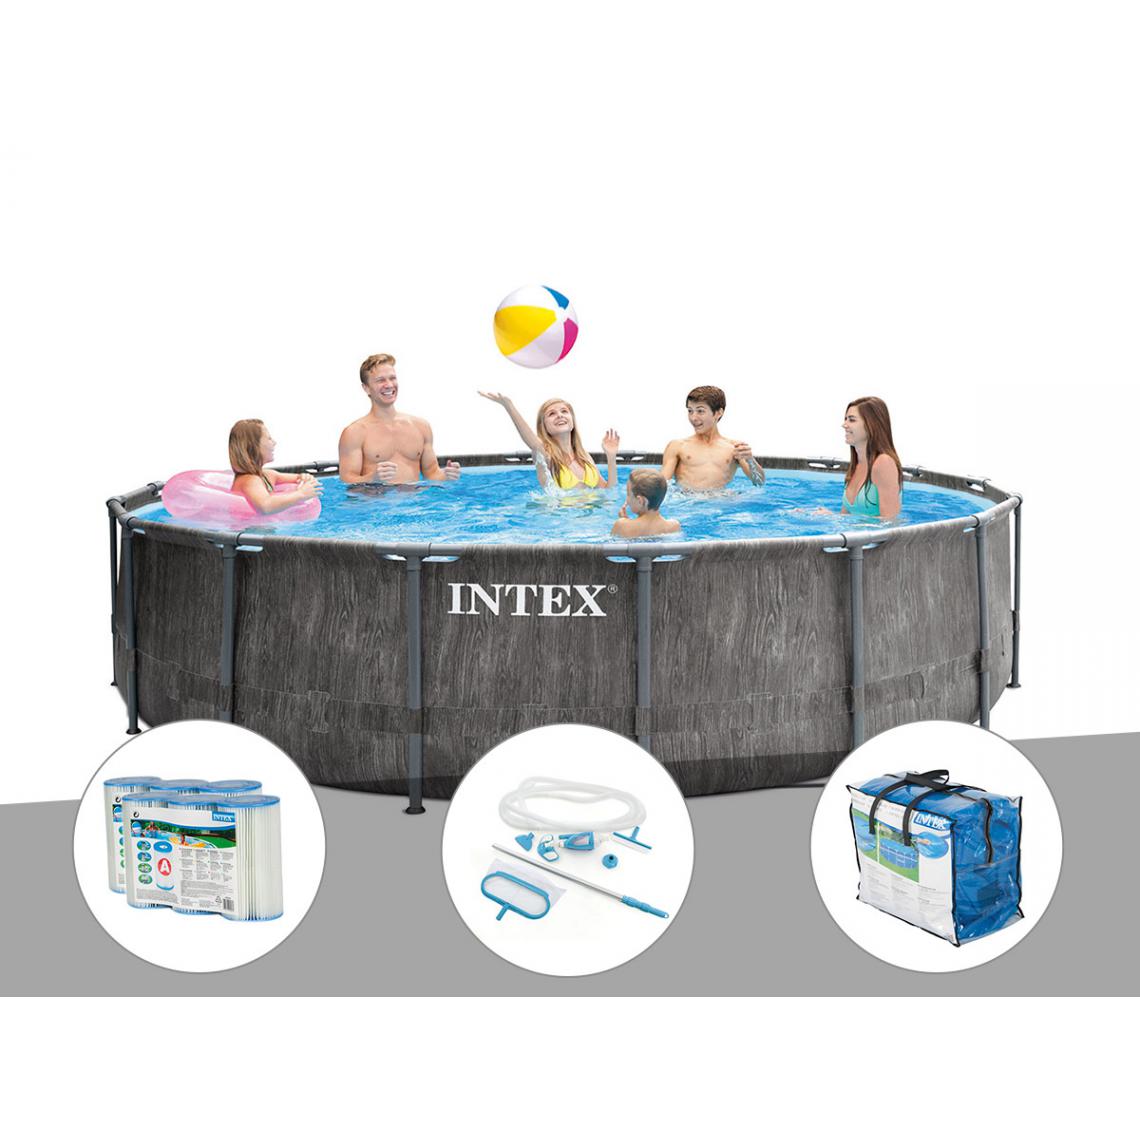 Intex - Kit piscine tubulaire Intex Baltik ronde 5,49 x 1,22 m + 6 cartouches de filtration + Kit d'entretien + Bâche à bulles - Piscine Tubulaire